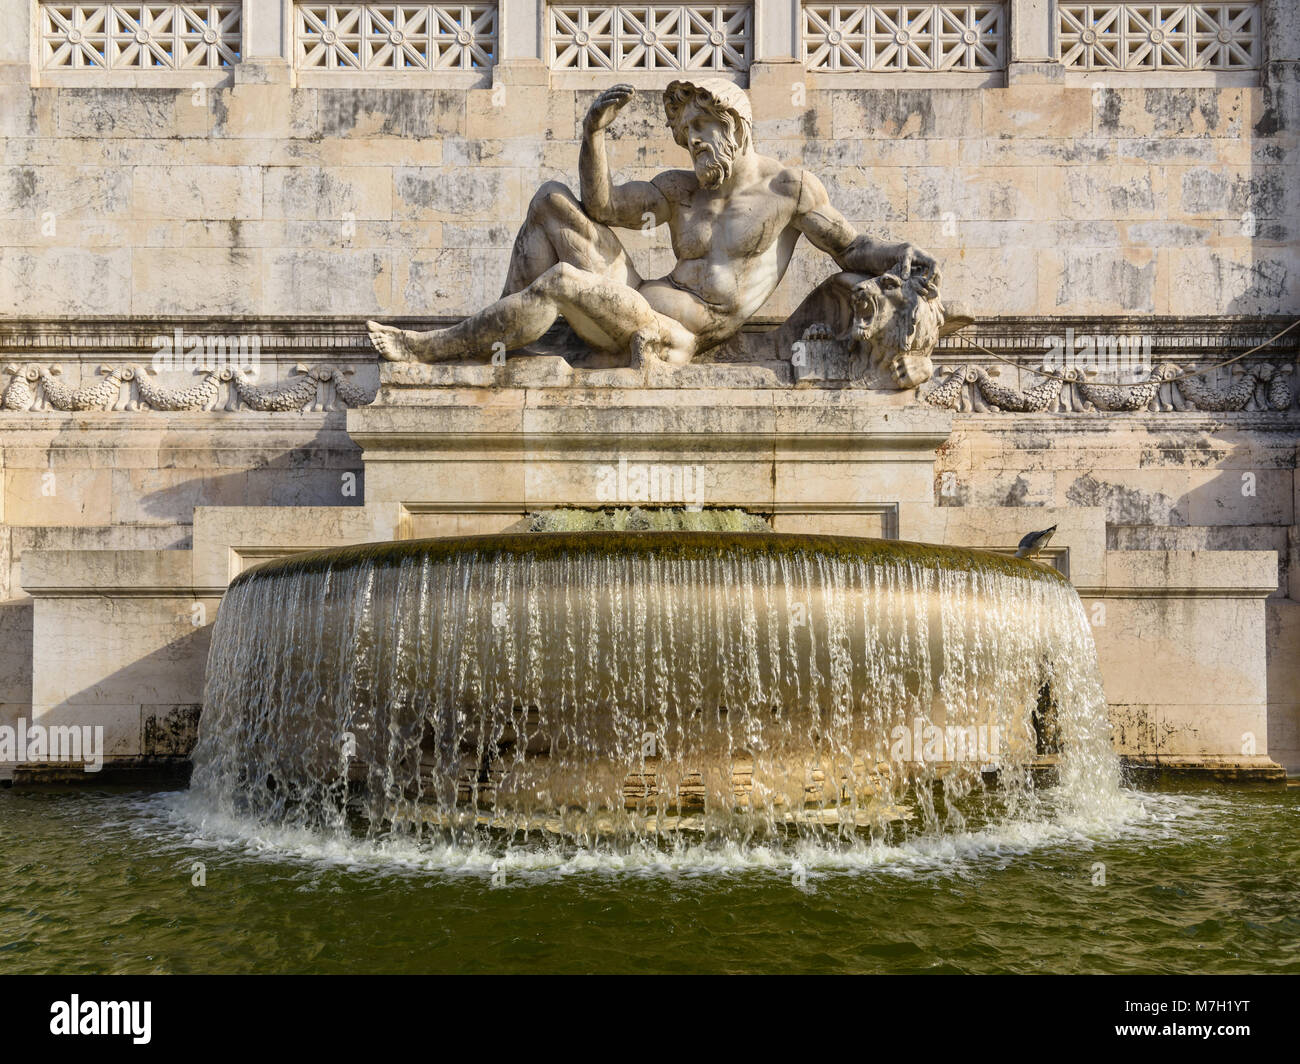 Adriatic Sea Fountain, Altare della Patria, Rome, Italy Stock Photo